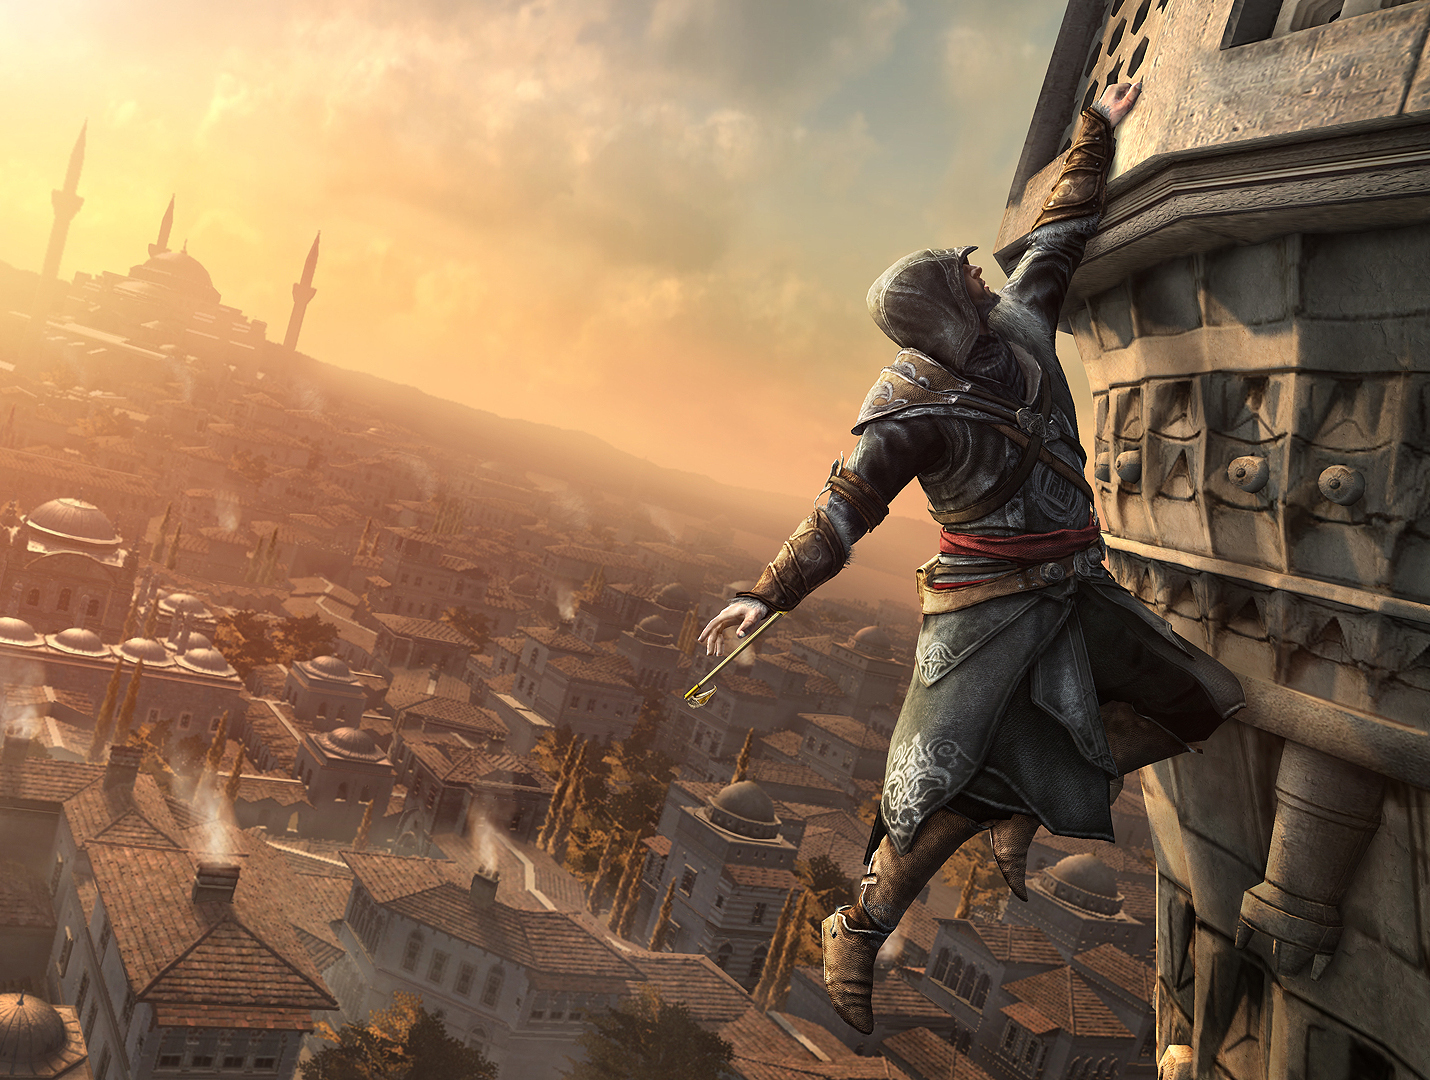 Assassin's Creed: Revelations GAME PATCH v.1.01 - v.1.02 - download